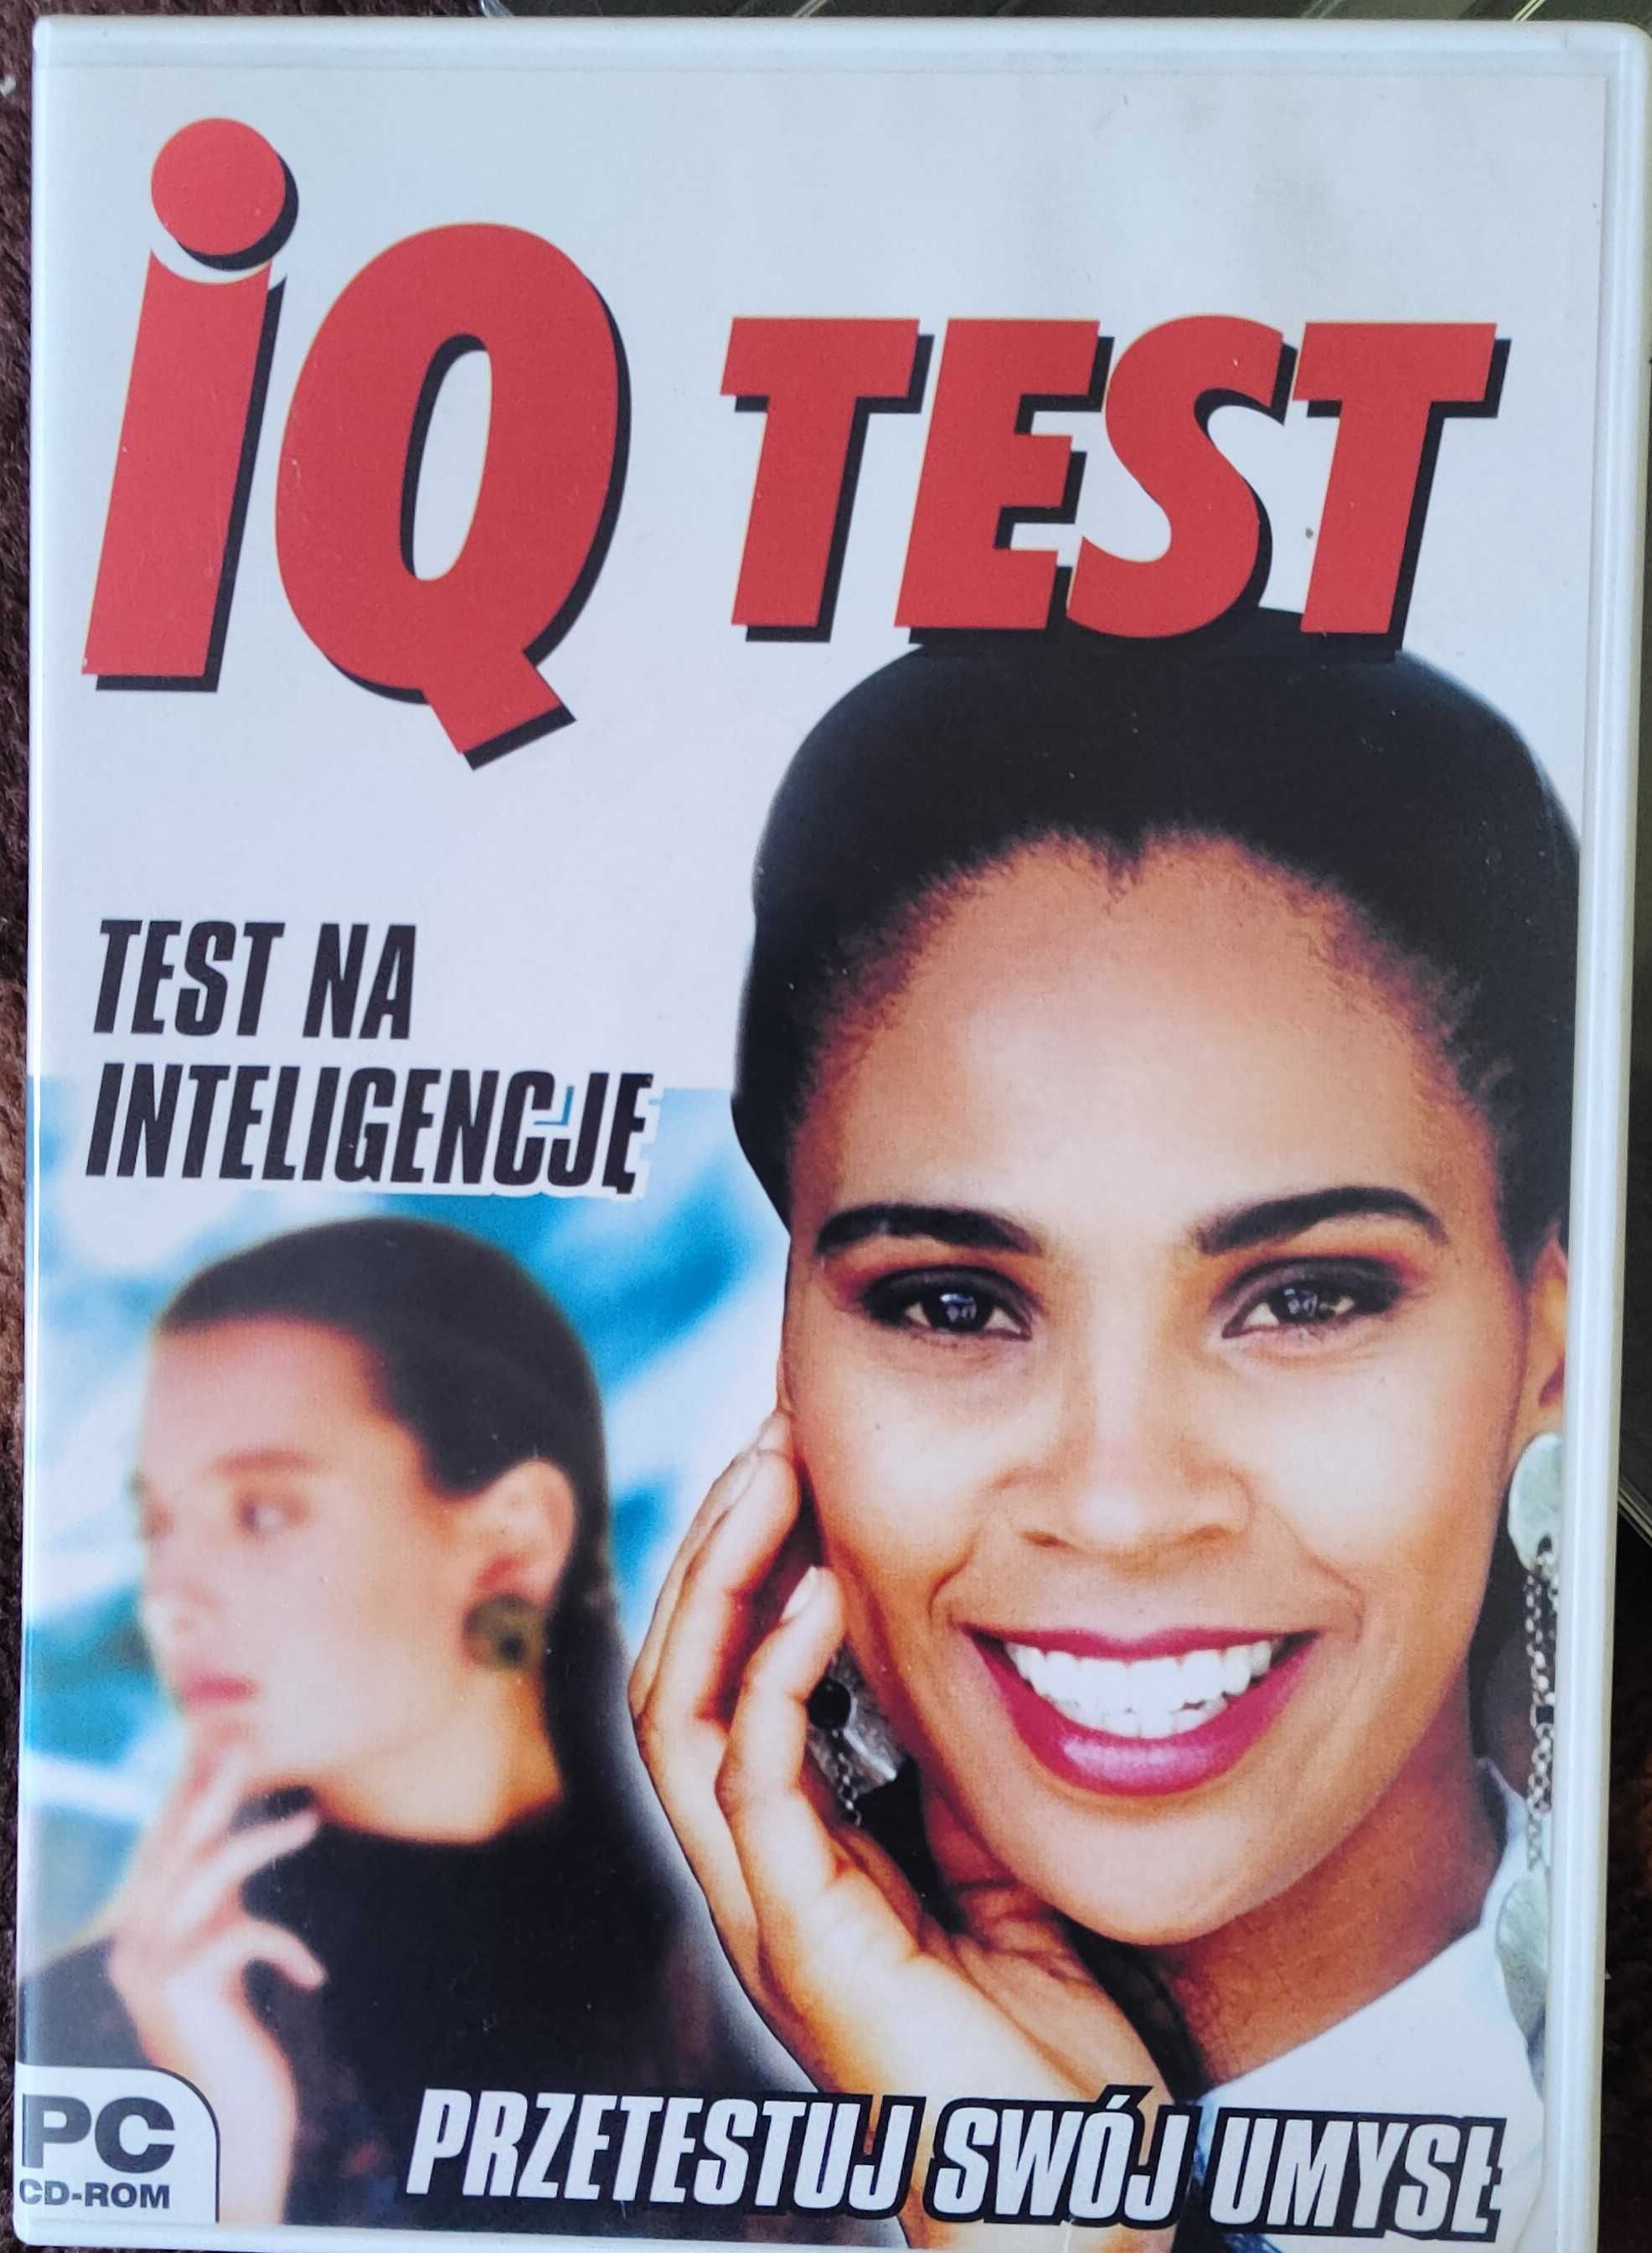 IQ Test test na inteligencje